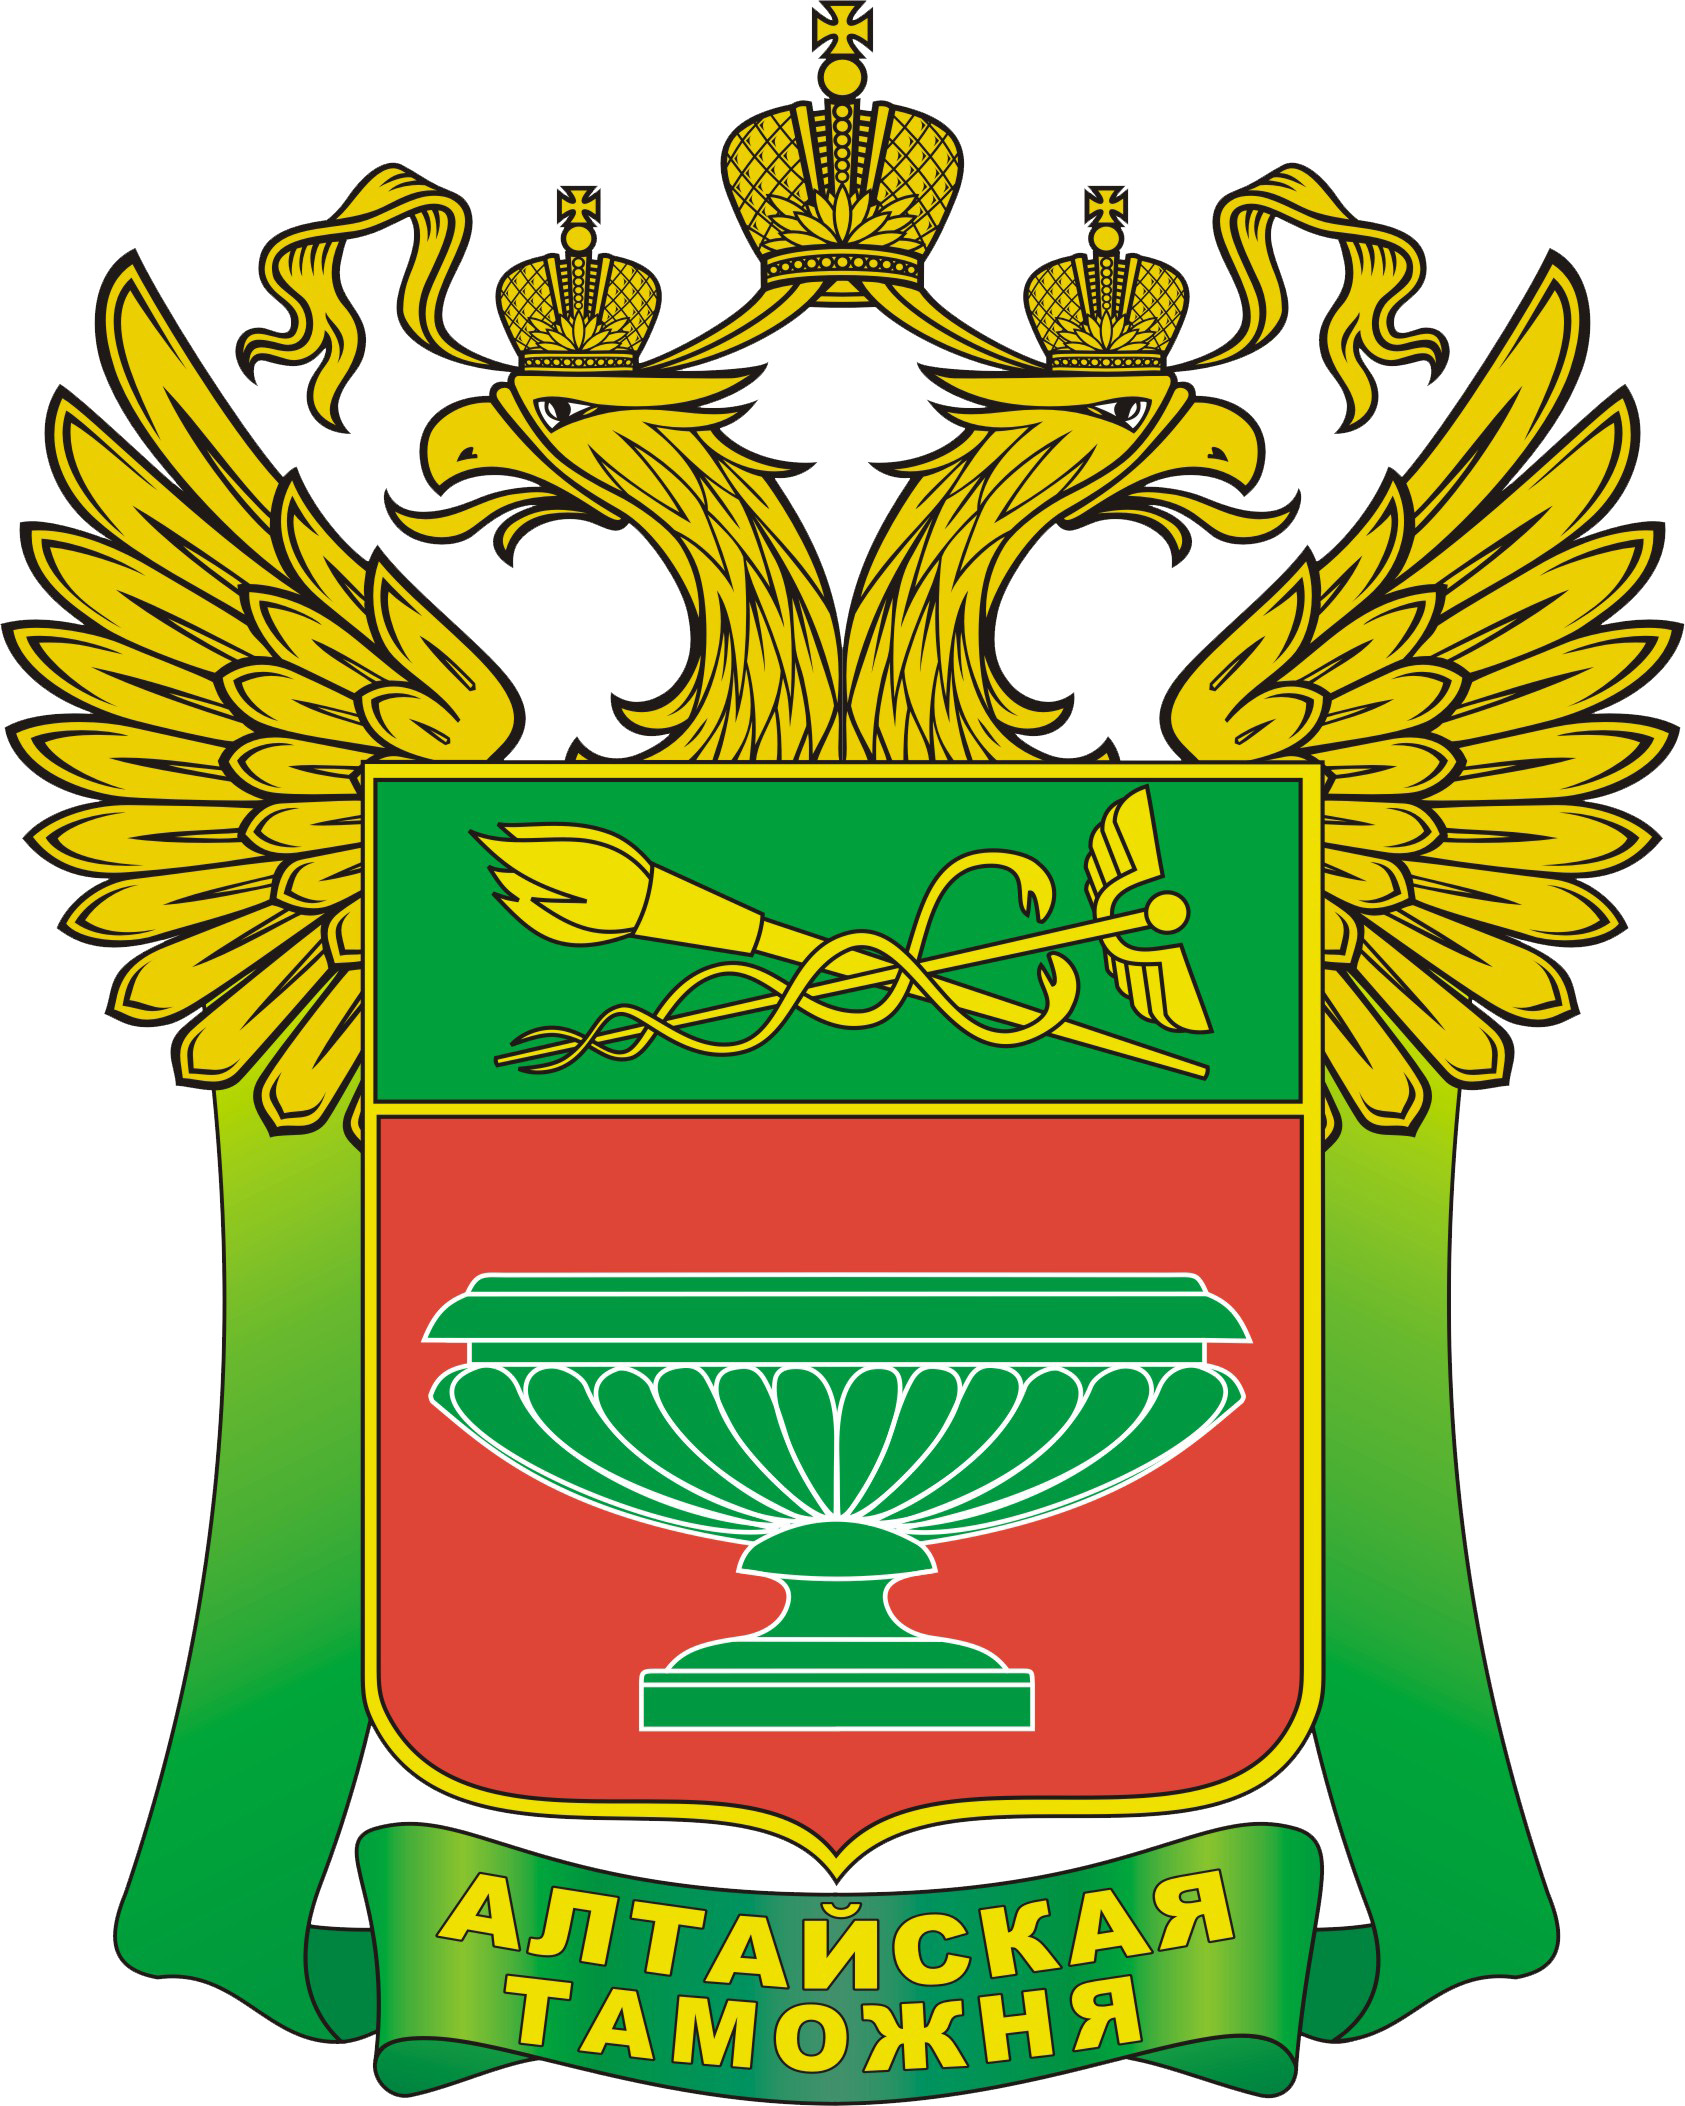 Таможенной службы Алтайского края